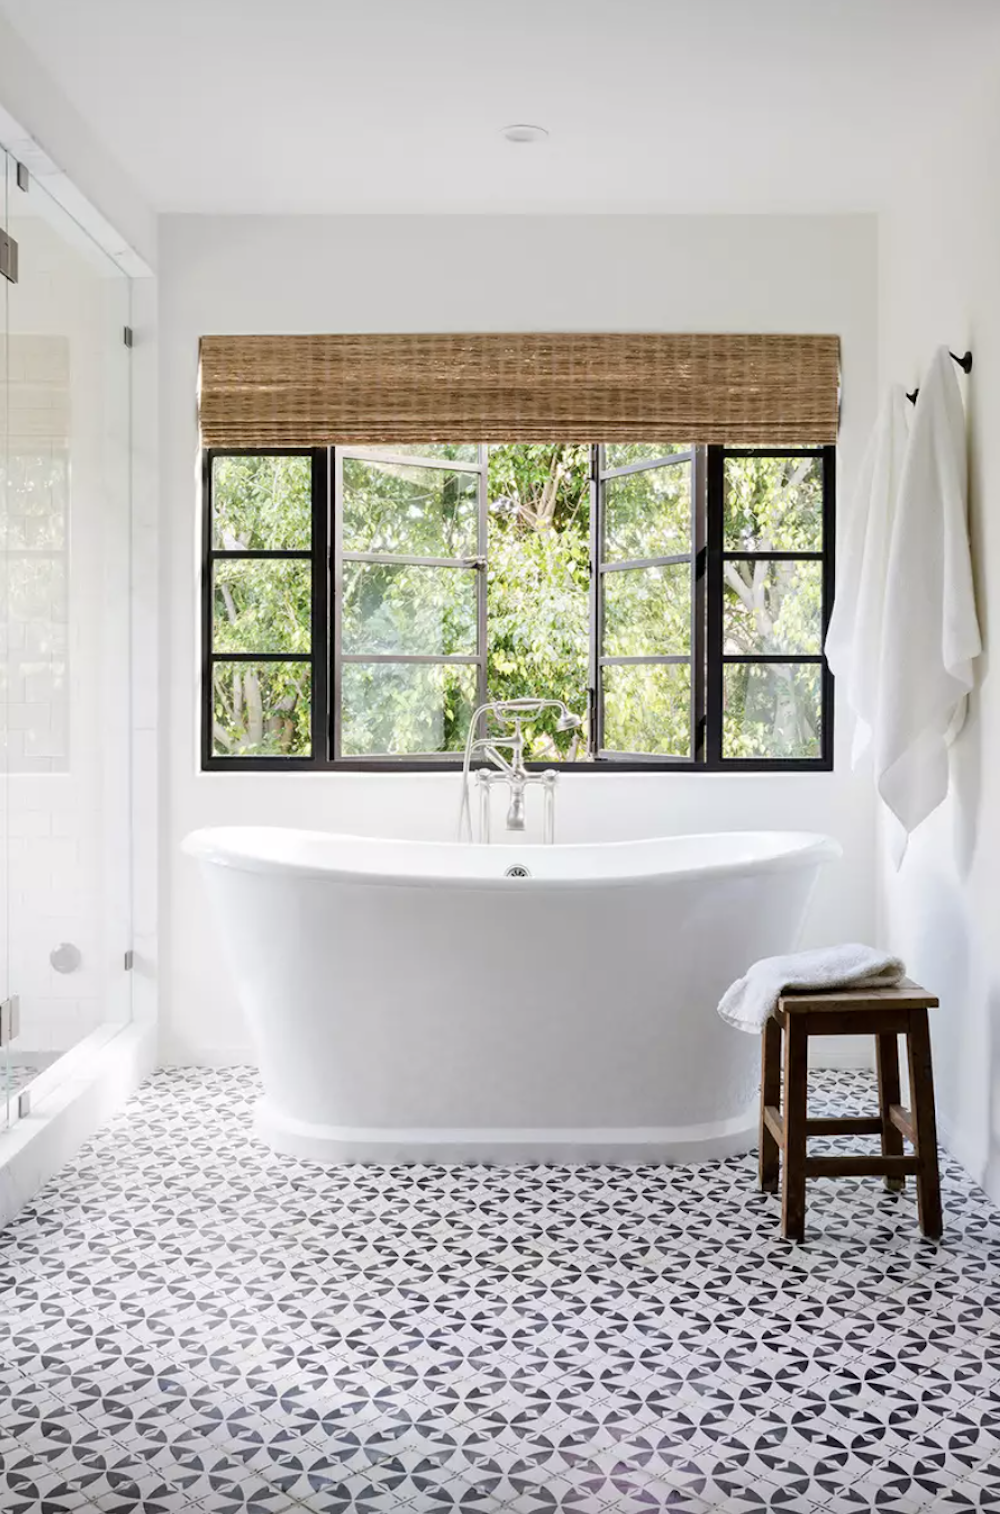 Bathtub with Tiled Floor